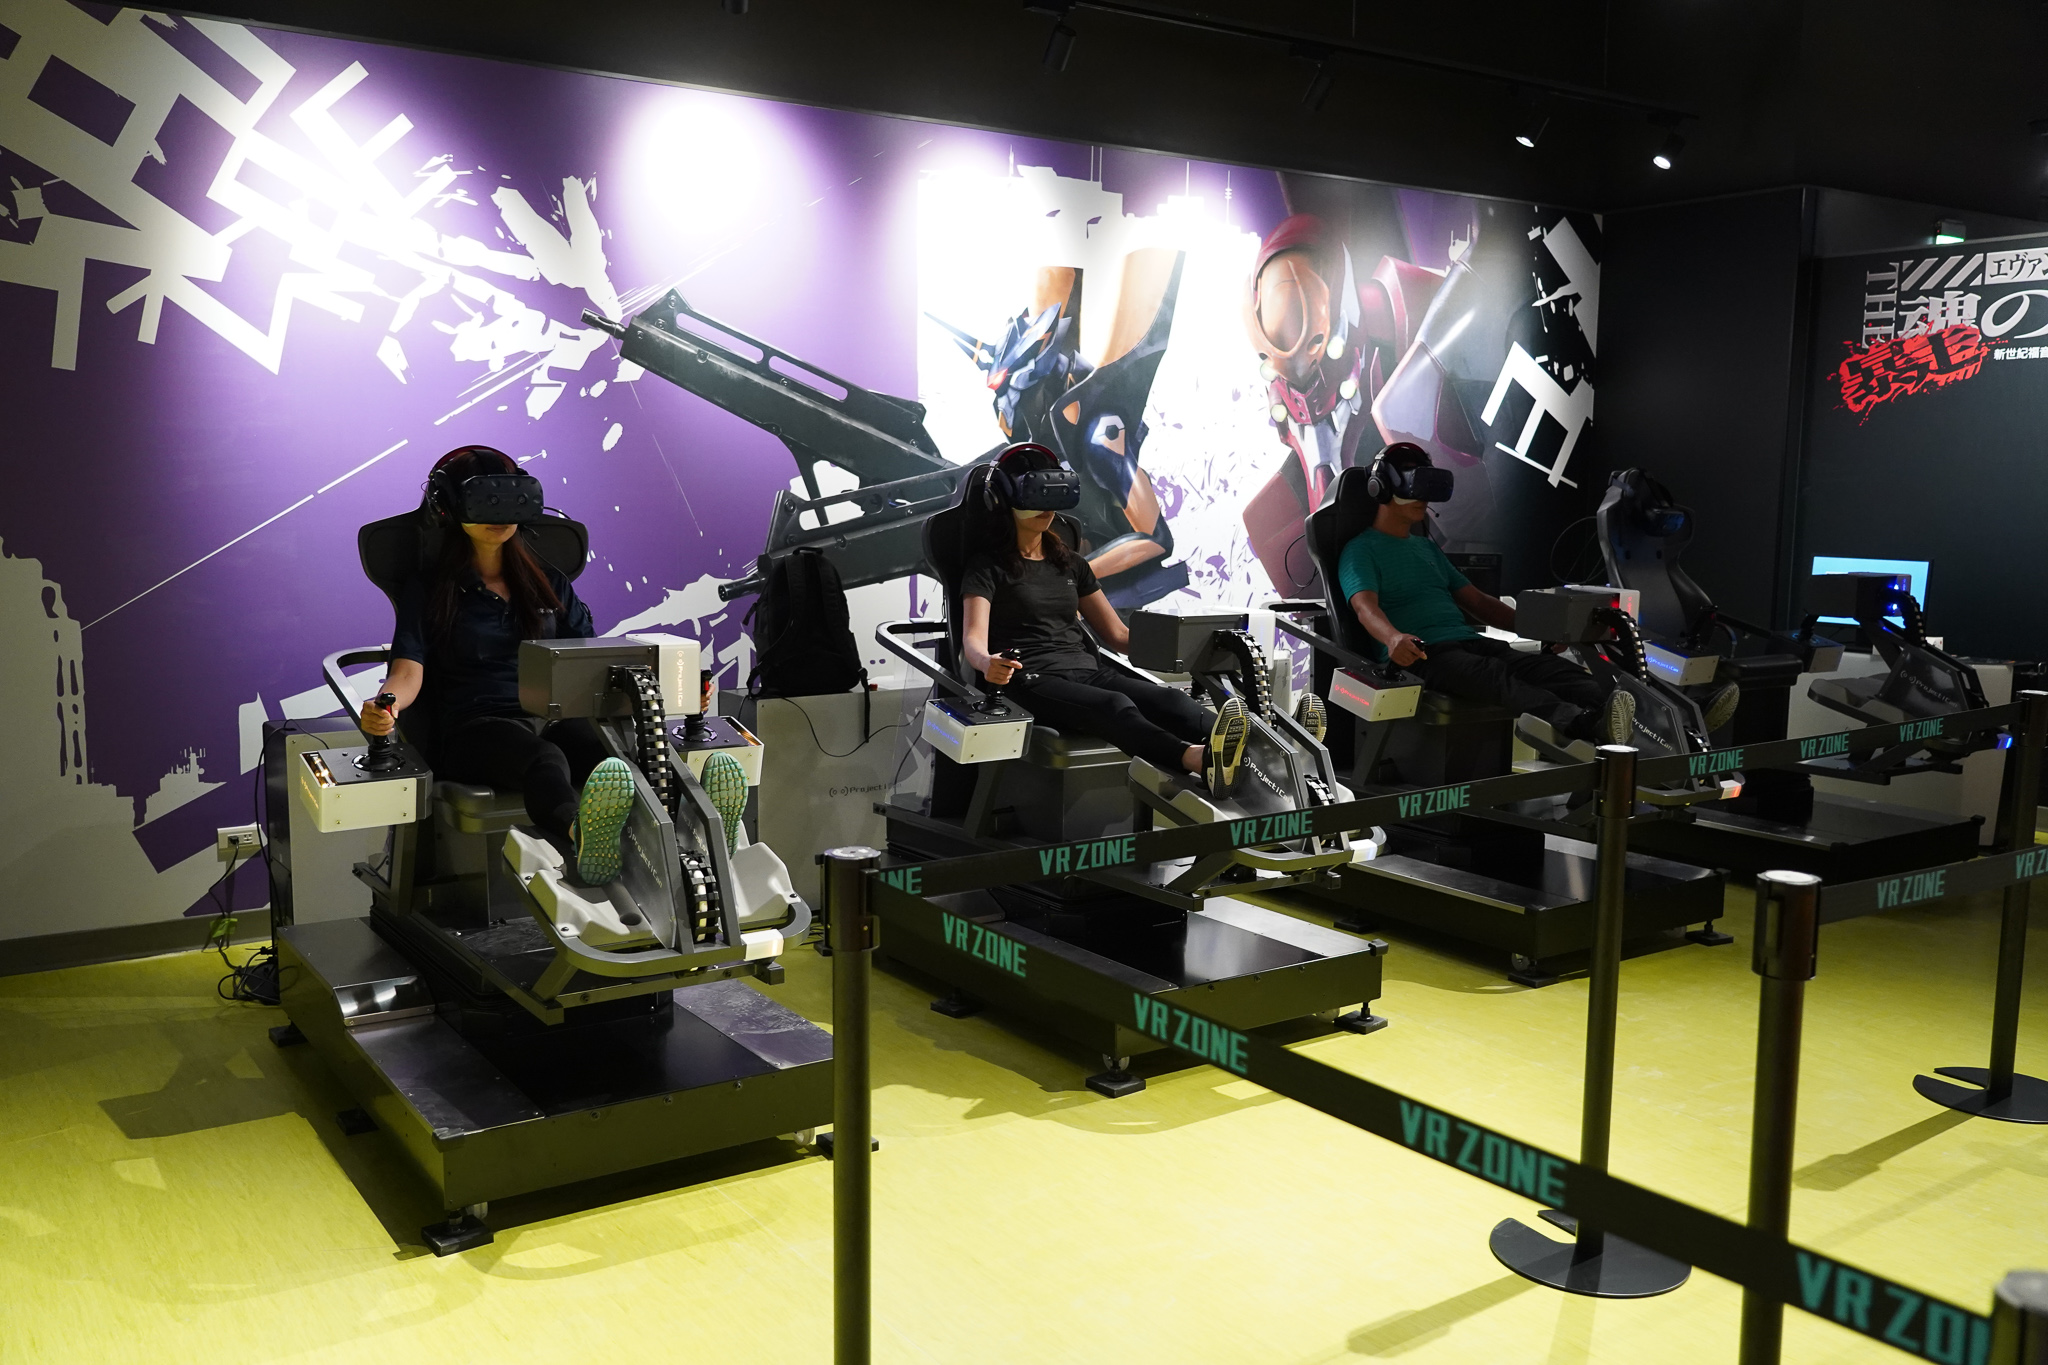 宏匯廣場VR ZONE New Taipei是擁有新世紀福音戰士、馬利歐賽車等全球高人氣黃金級IP的虛擬實境遊樂園